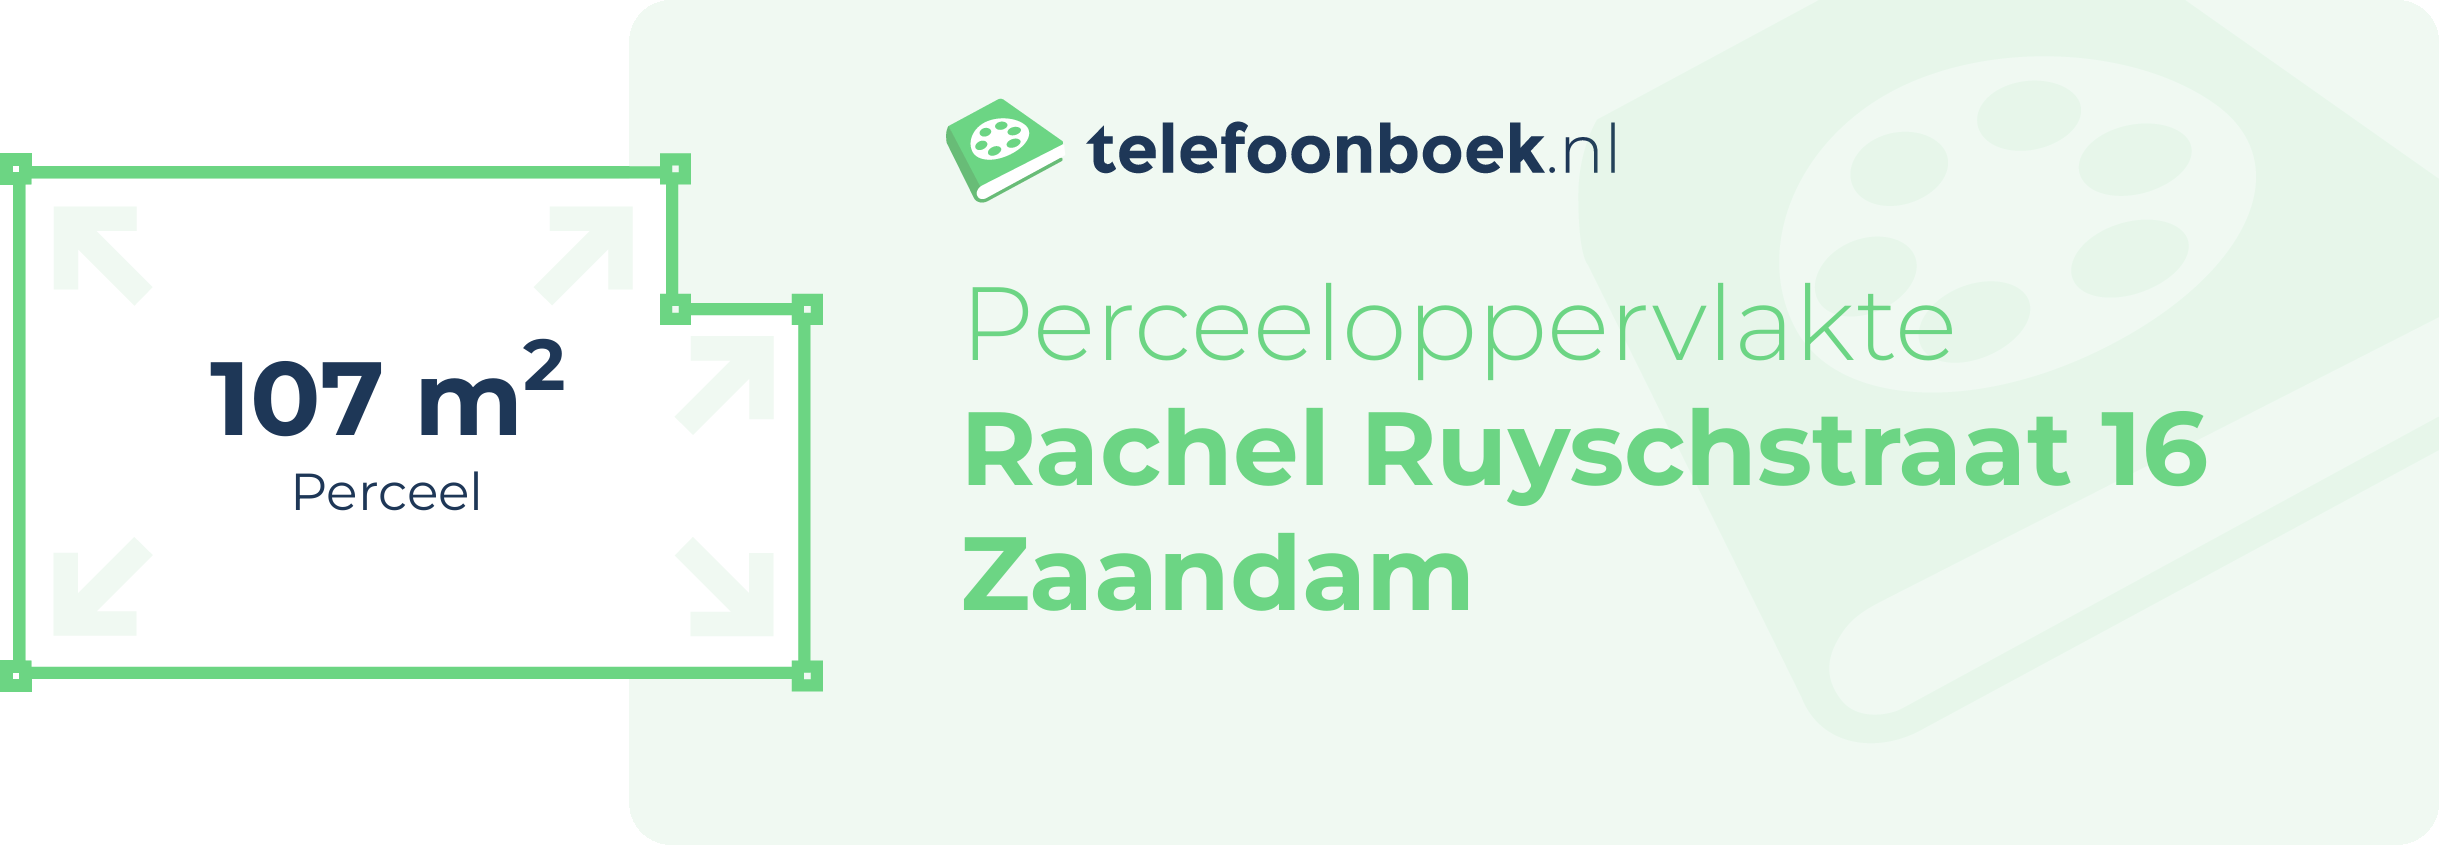 Perceeloppervlakte Rachel Ruyschstraat 16 Zaandam